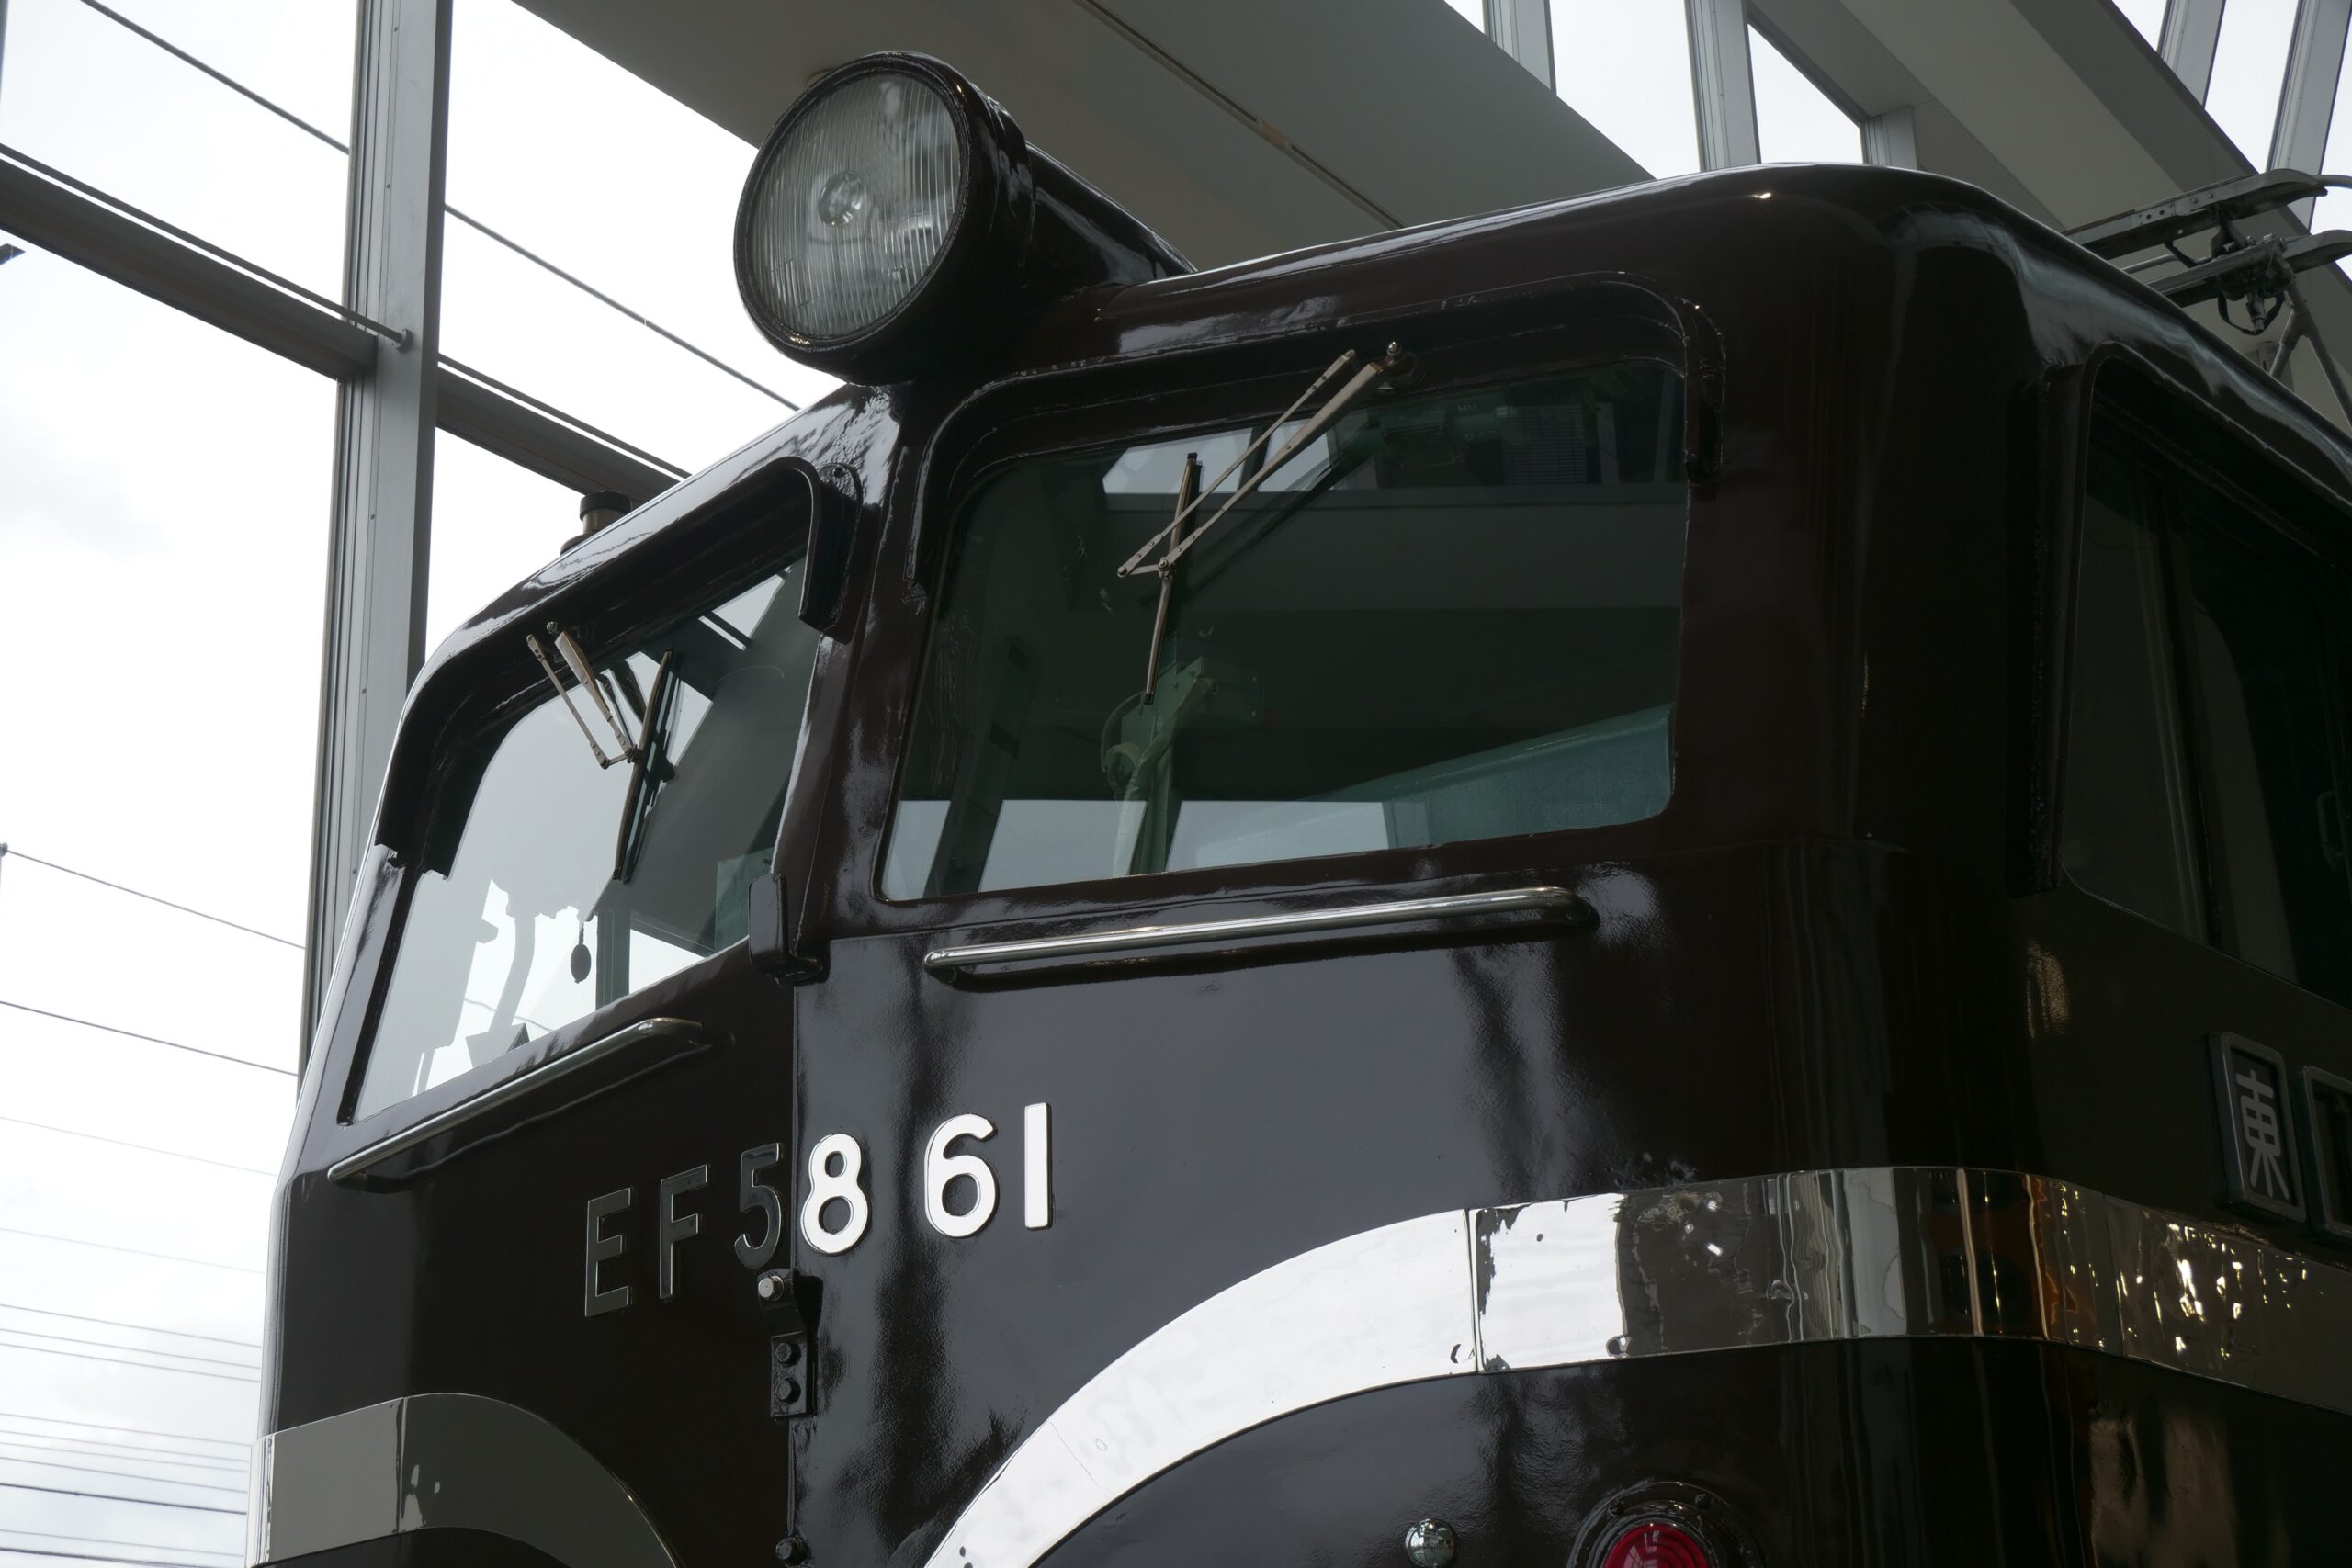 【保存車めぐり】鉄道博物館（大宮）EF58 61【その25】